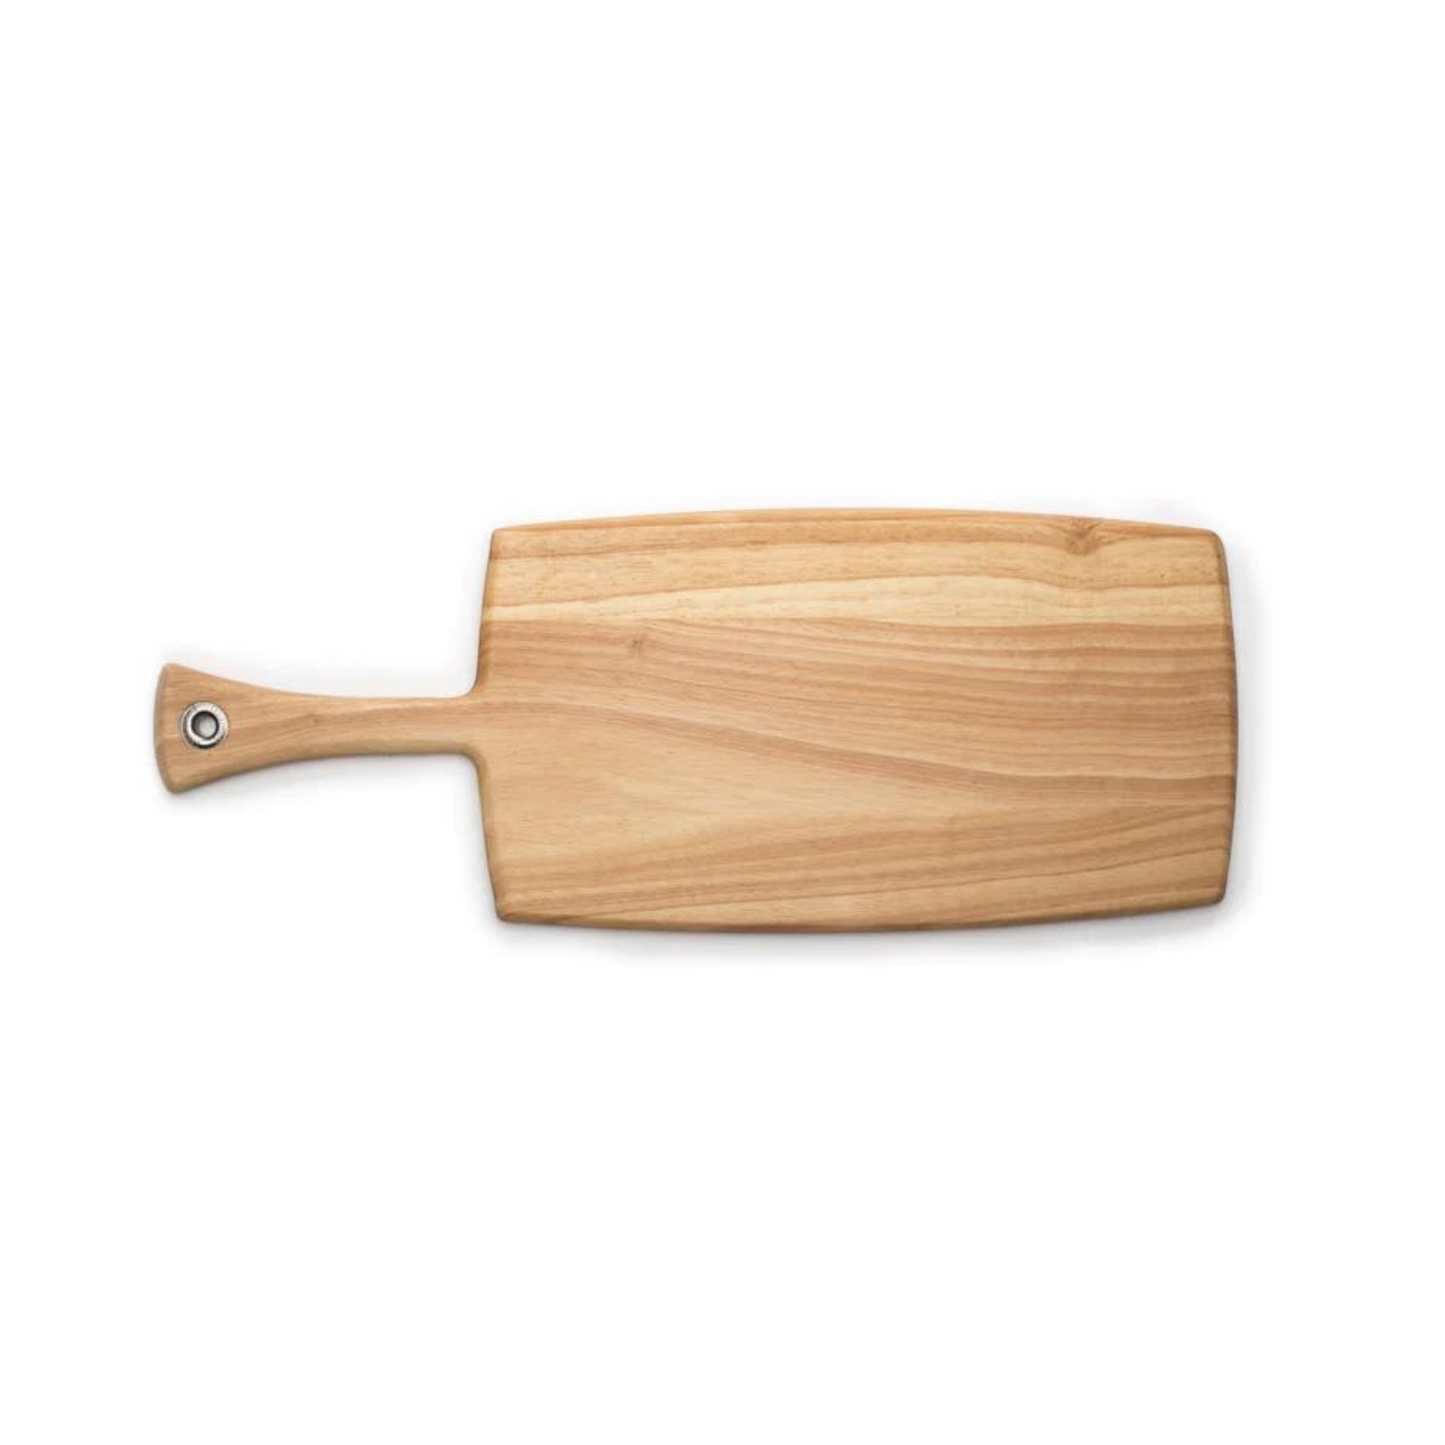 Provençale Paddle Board - Large Rectangular Blonde